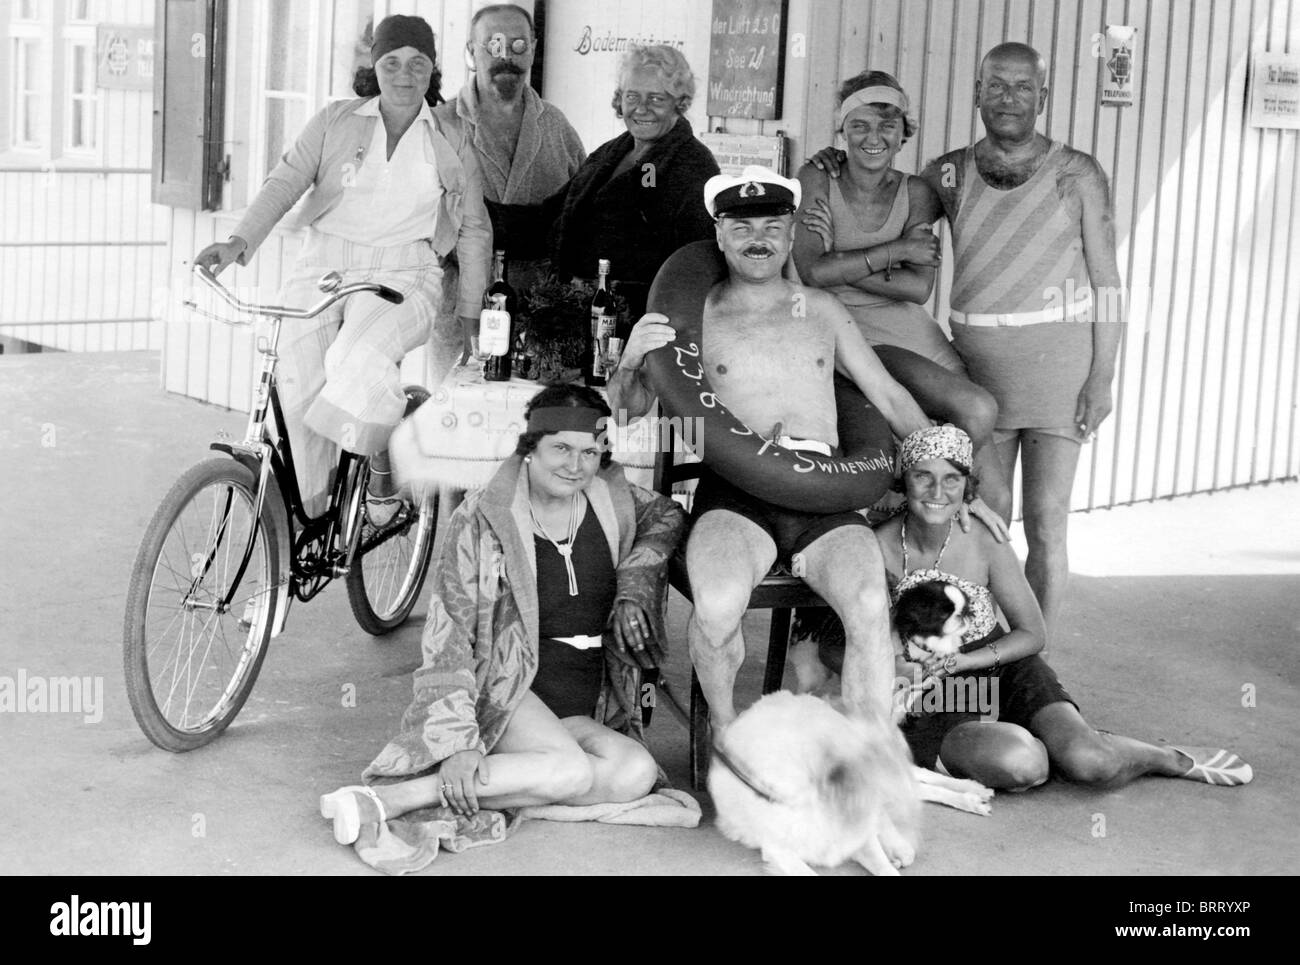 Gruppenbild, Ostsee, Swinemuende, historisches Foto, um 1929 Stockfoto